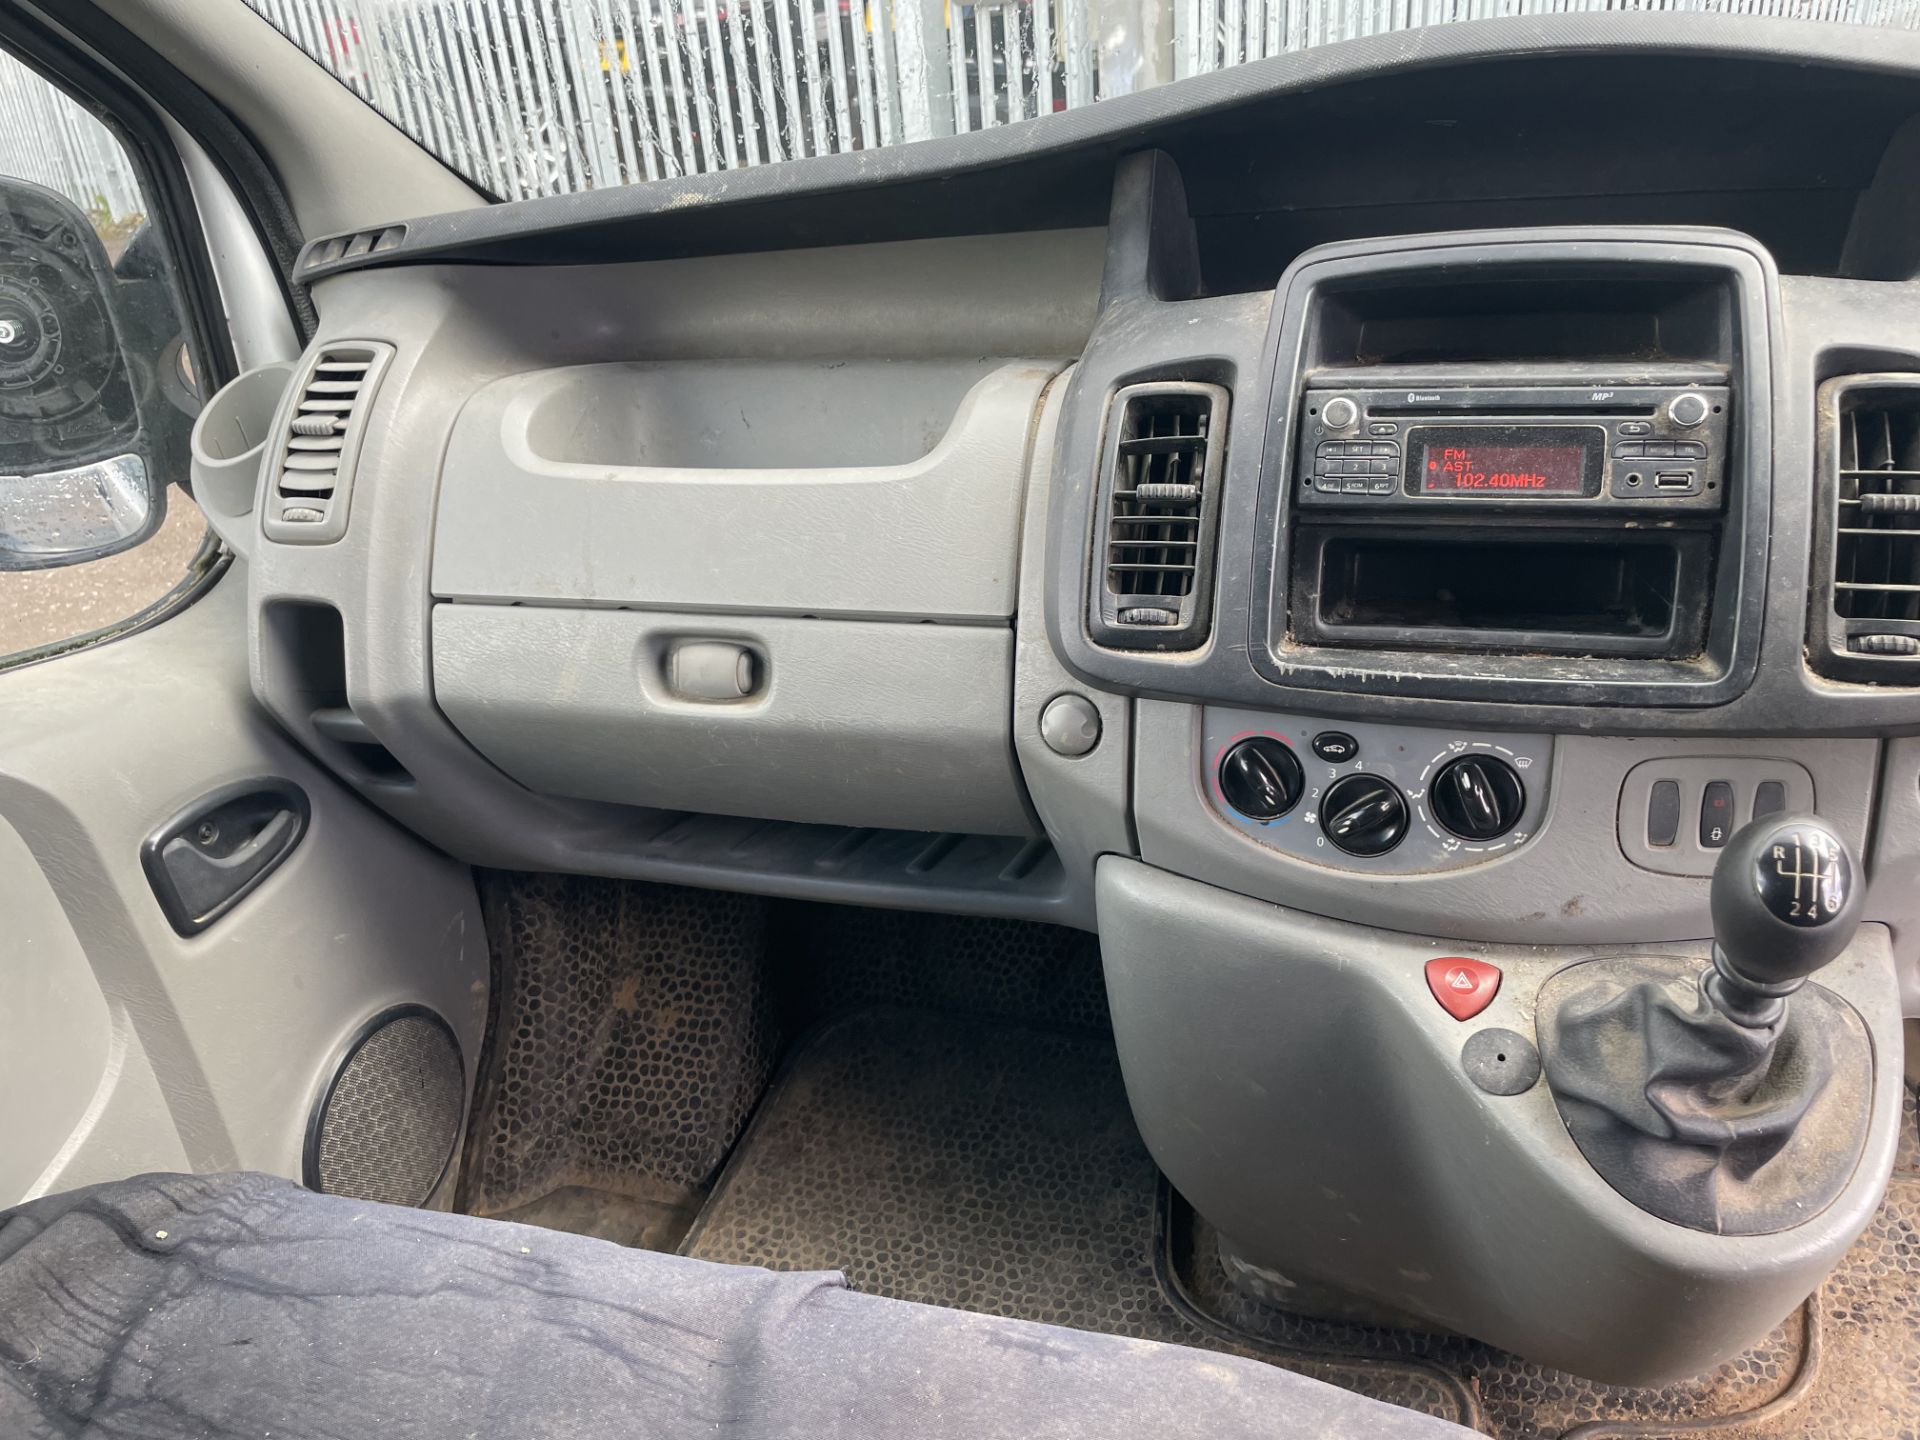 ** ON SALE ** Vauxhall Vivaro 2900 2.0 115 H3 L3 Panel Van 2014 '14 Reg' -Bluetooth Handsfree - Image 19 of 24